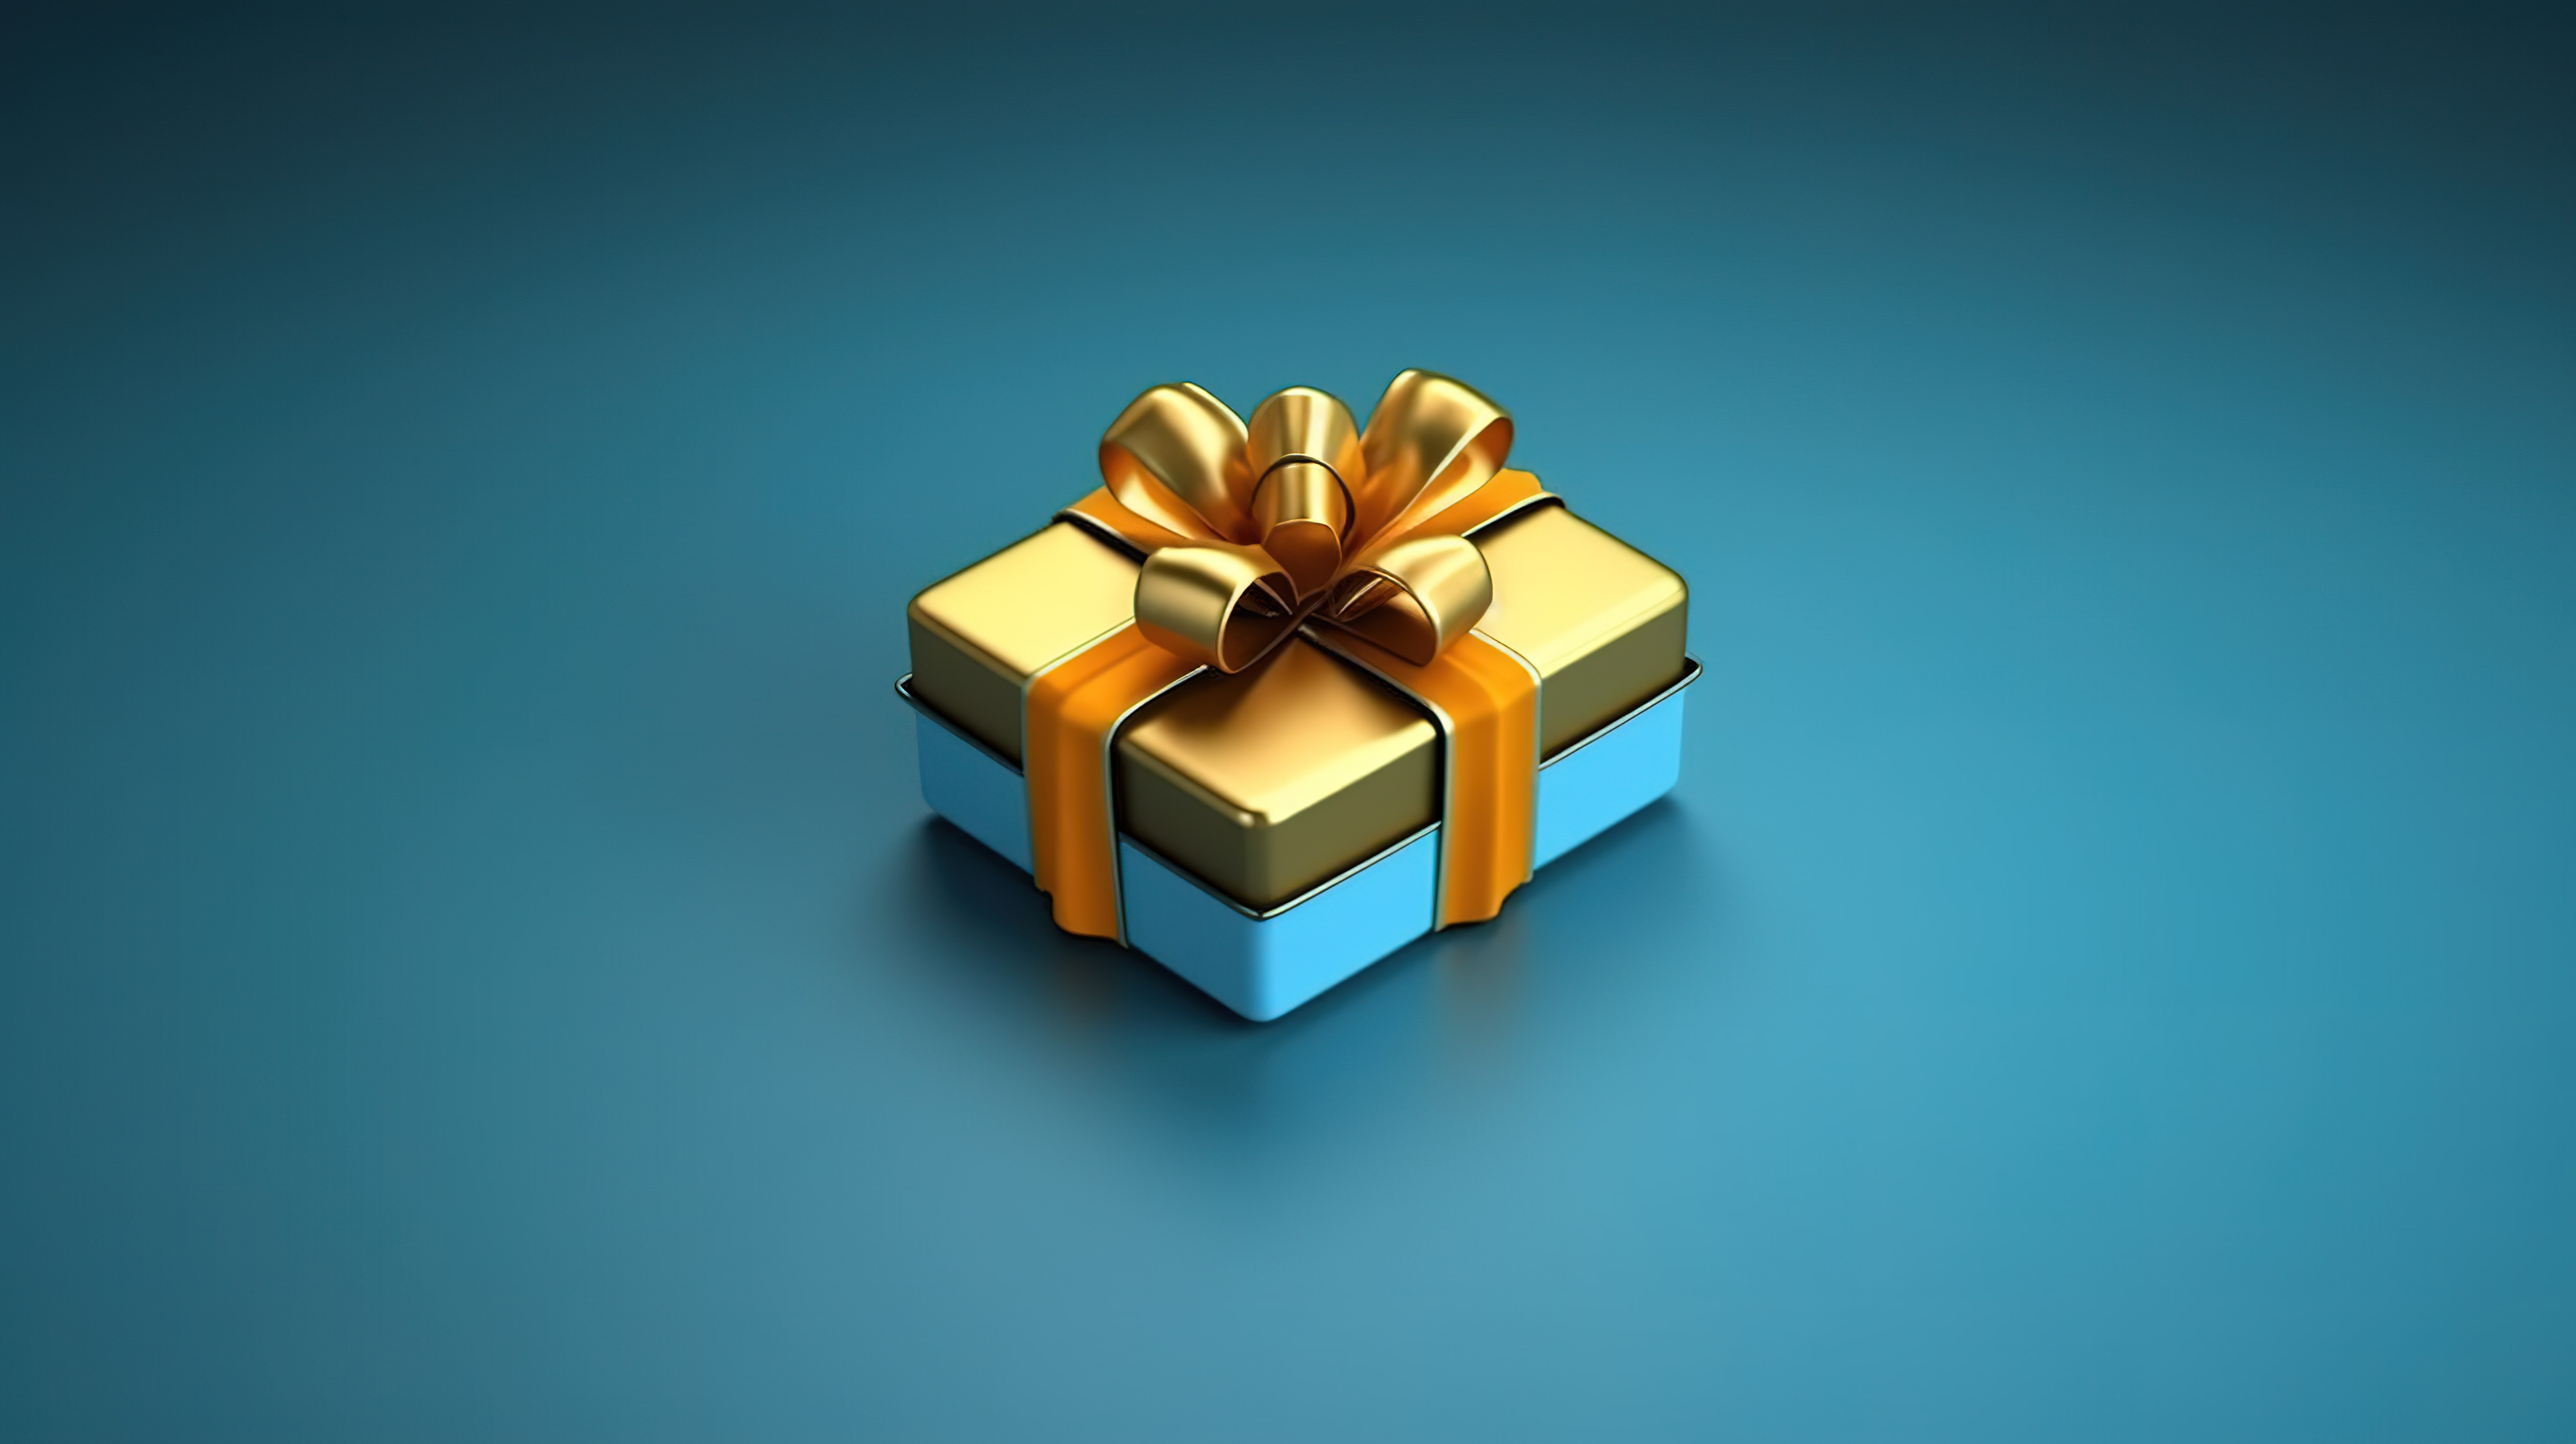 打开惊喜礼品盒并赚取奖励积分特别优惠 3D 概念图片